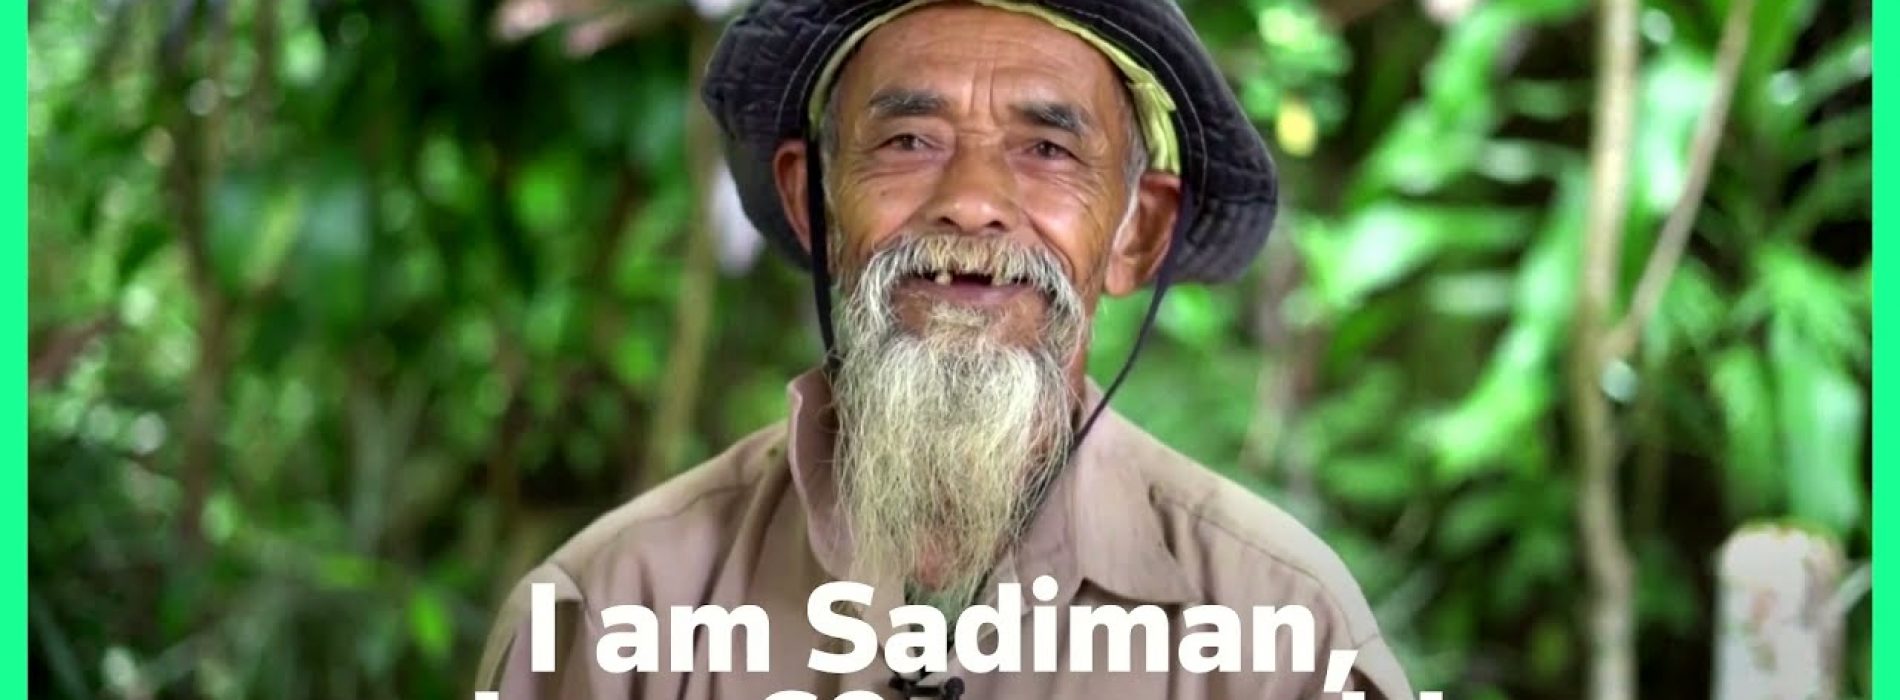 Eén man stopt de droogte en brengt welvaart naar het dorp door in 24 jaar tijd 11.000 bomen te planten